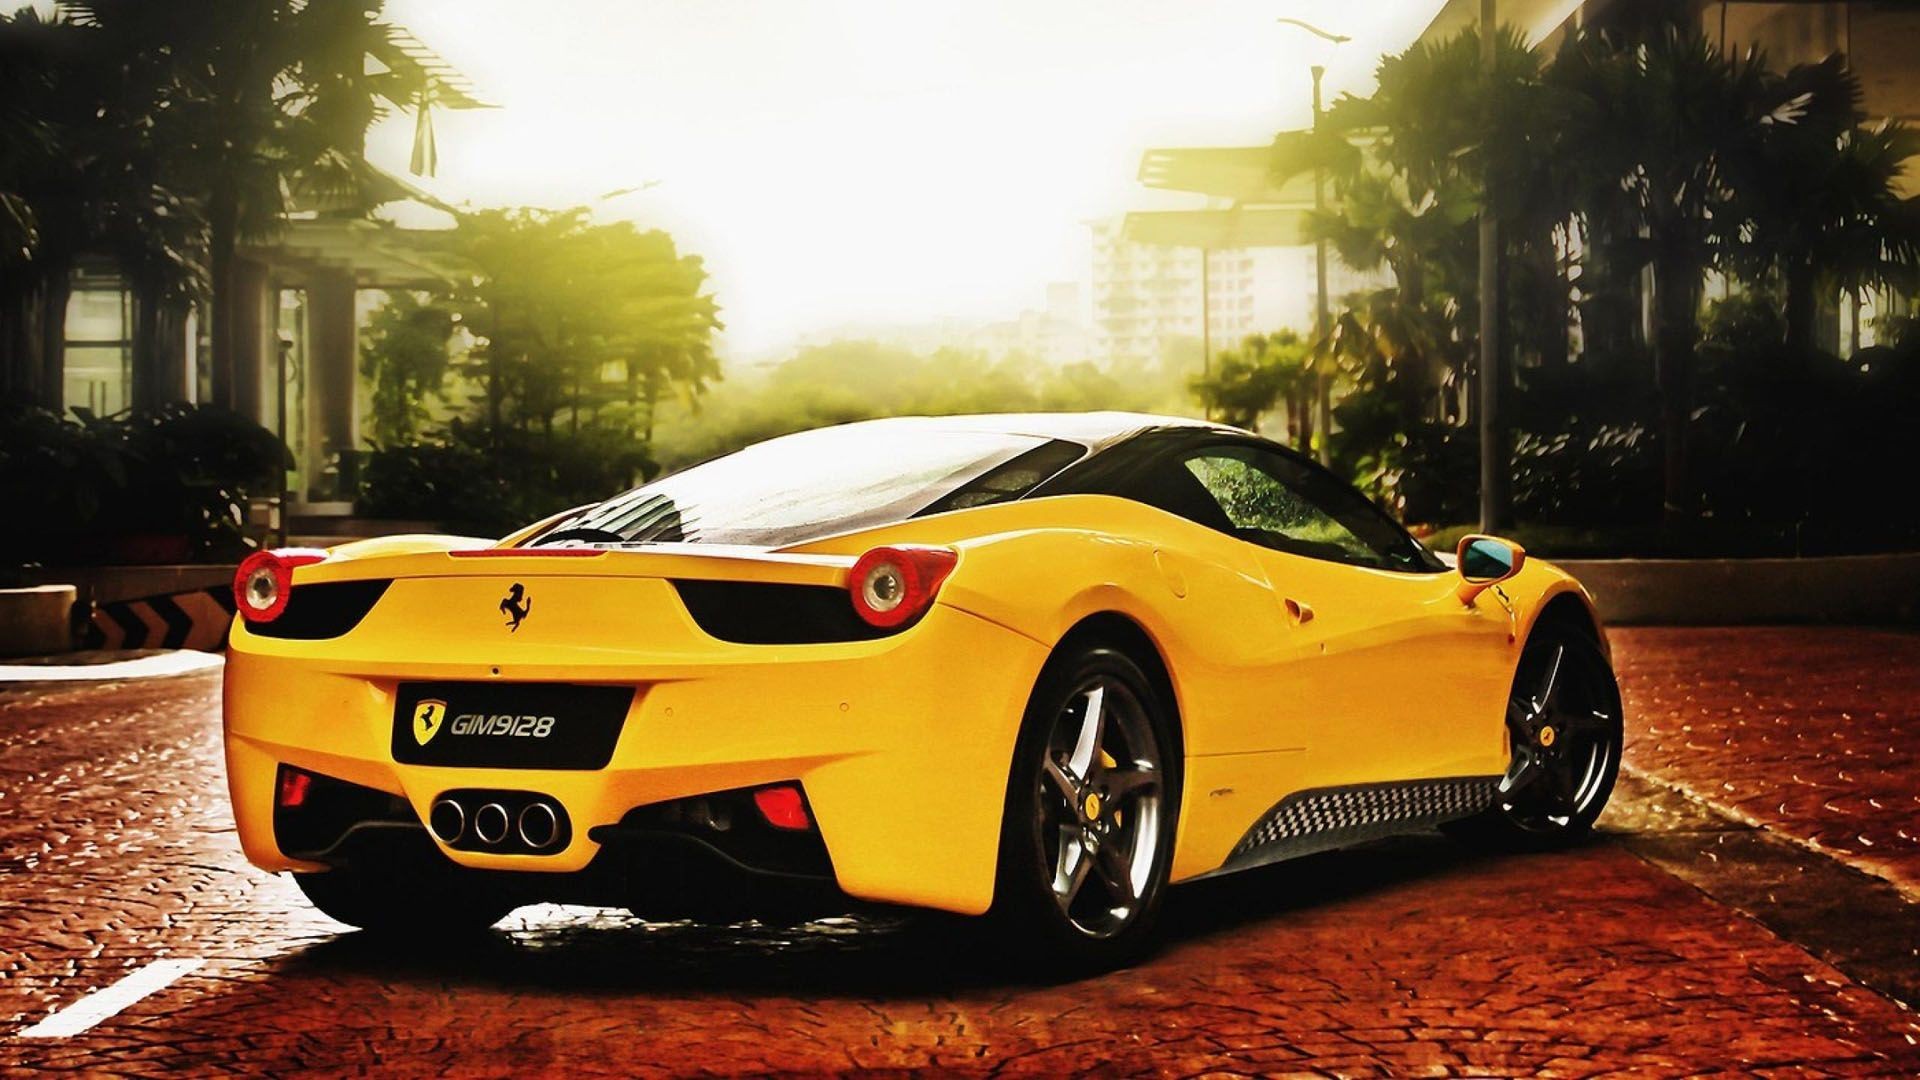 Background Wallpapers For Picsart - Hd Ferrari Car Wallpapers 1080p , HD Wallpaper & Backgrounds